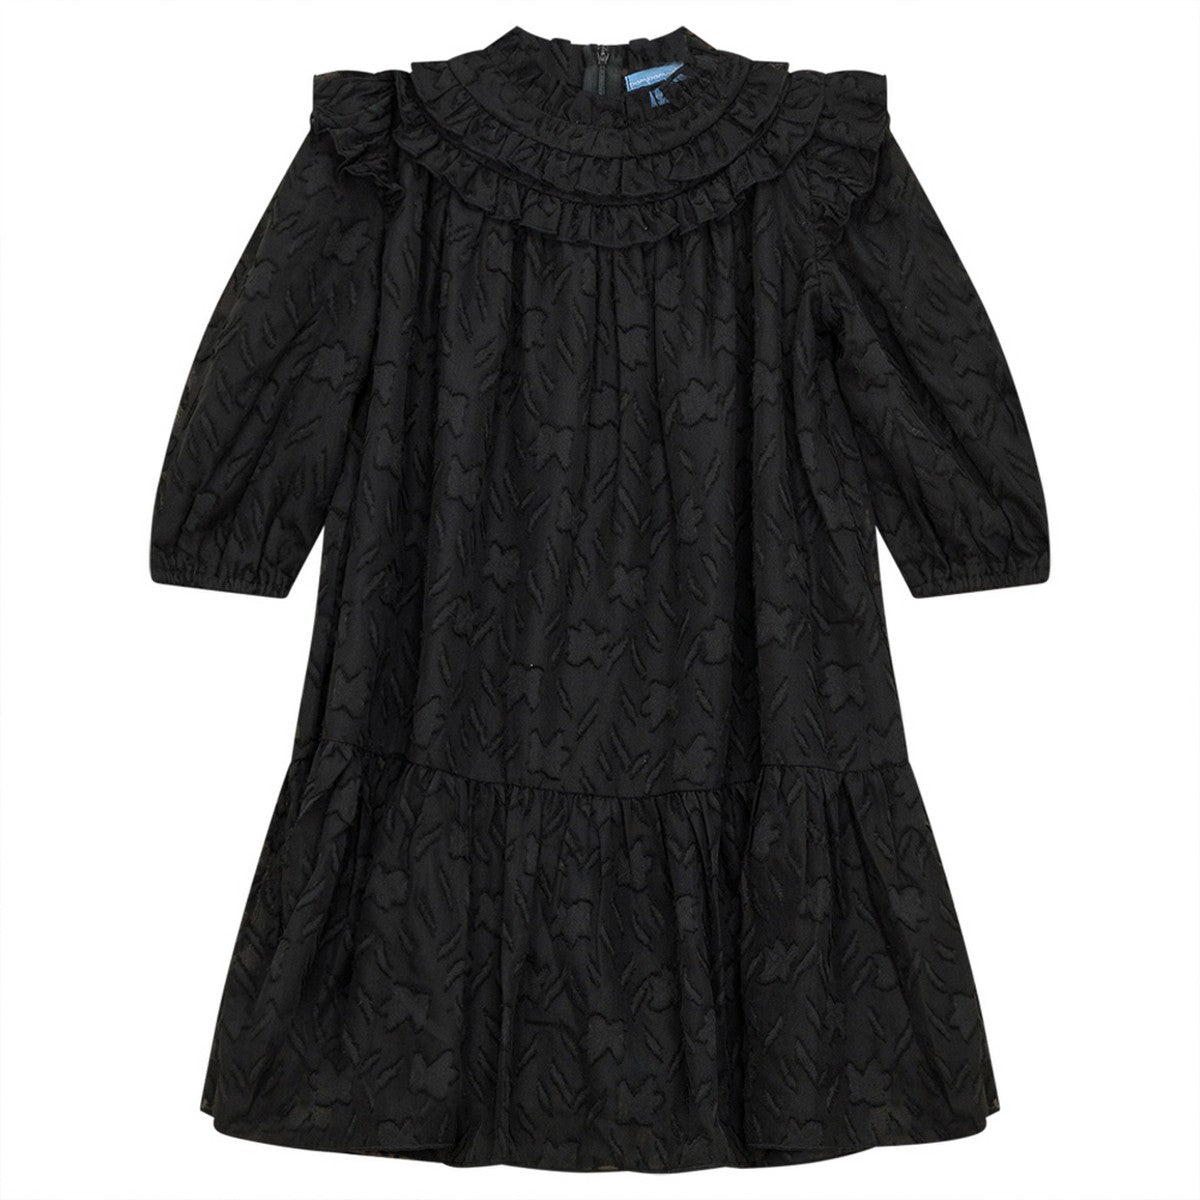 Pompomme Black Lace Dress